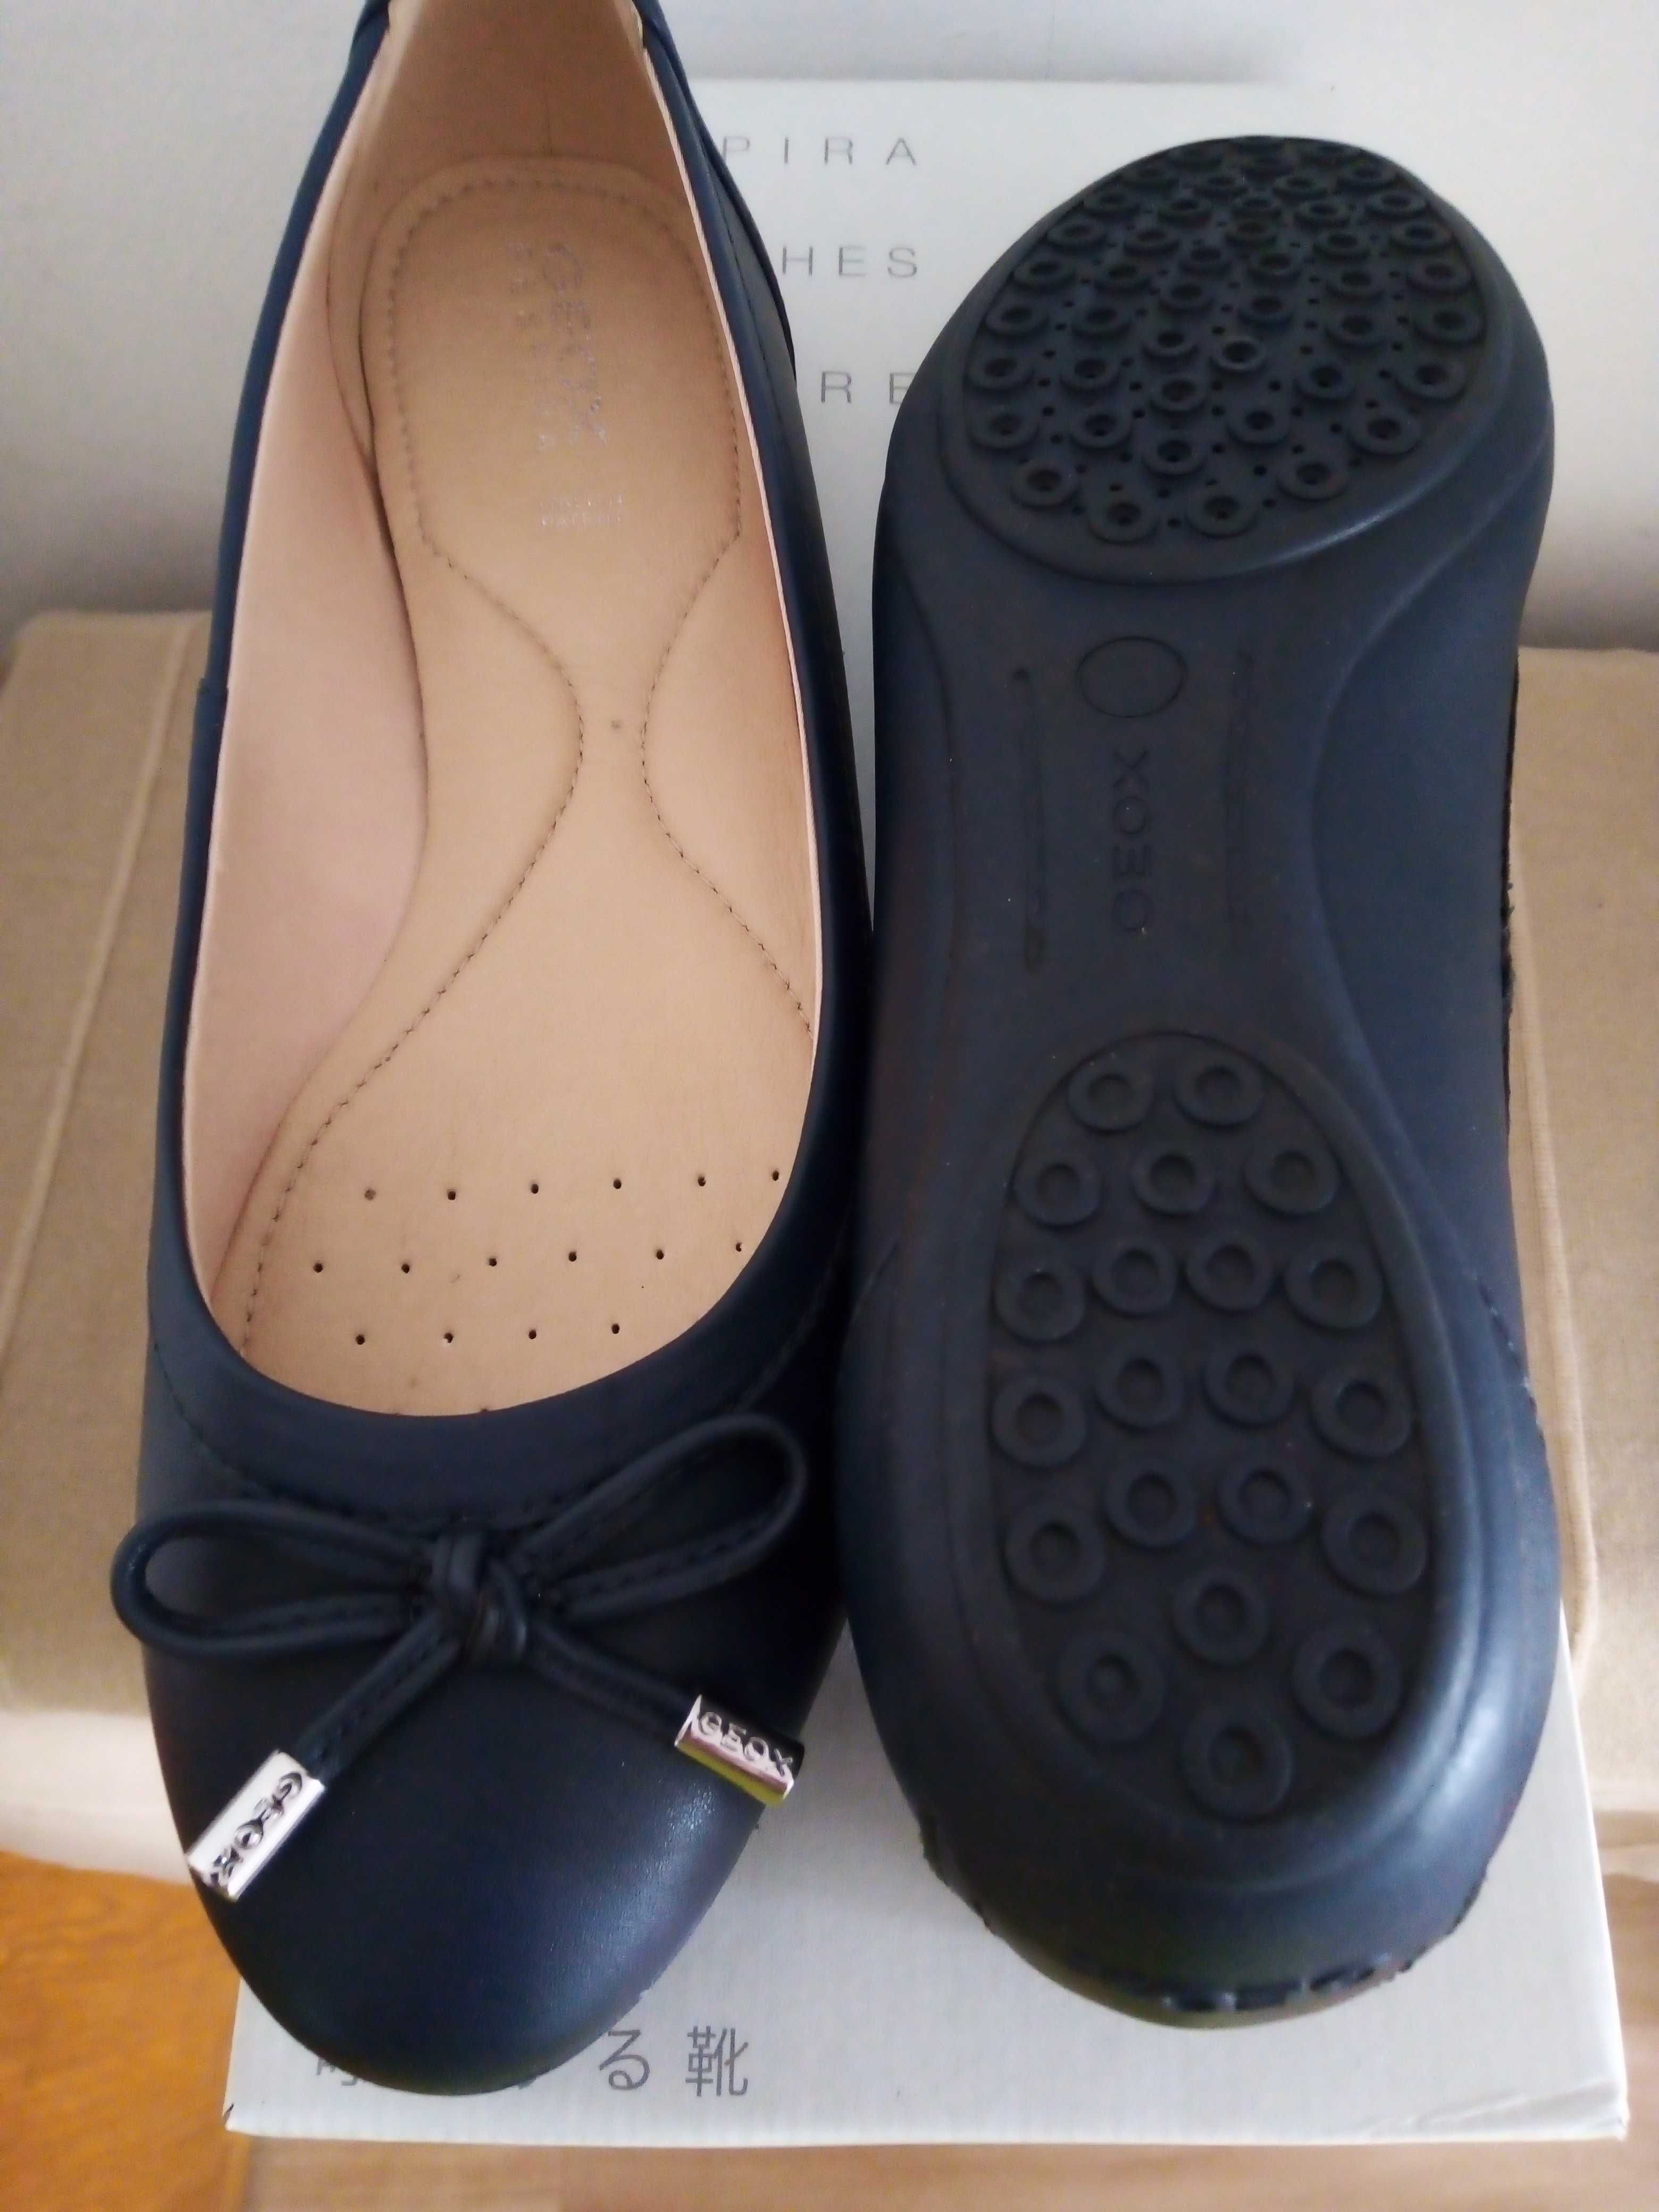 Pantofi damă, GEOX, culoare bleumarin închis, noi, marimea 37